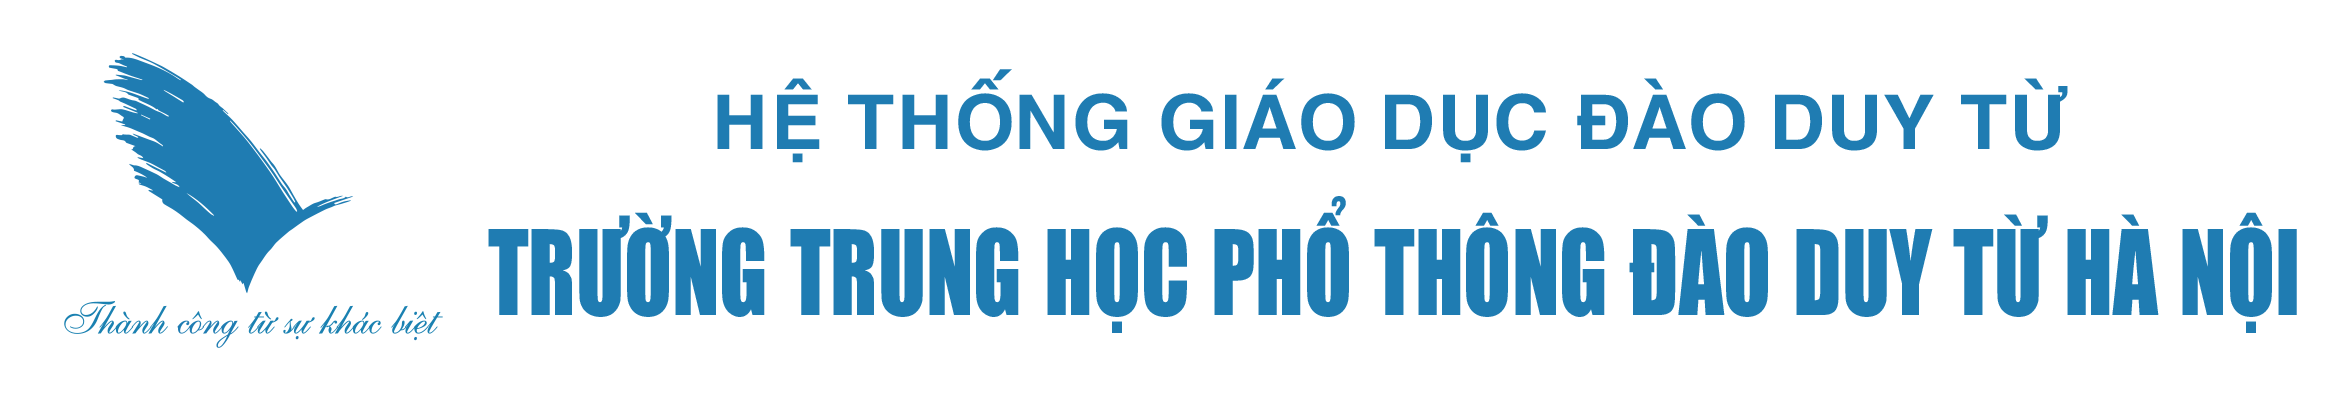 Trường THPT Đào Duy Từ – Hà Nội | www.thptdaoduytu.vn – THPT Đào Duy Từ